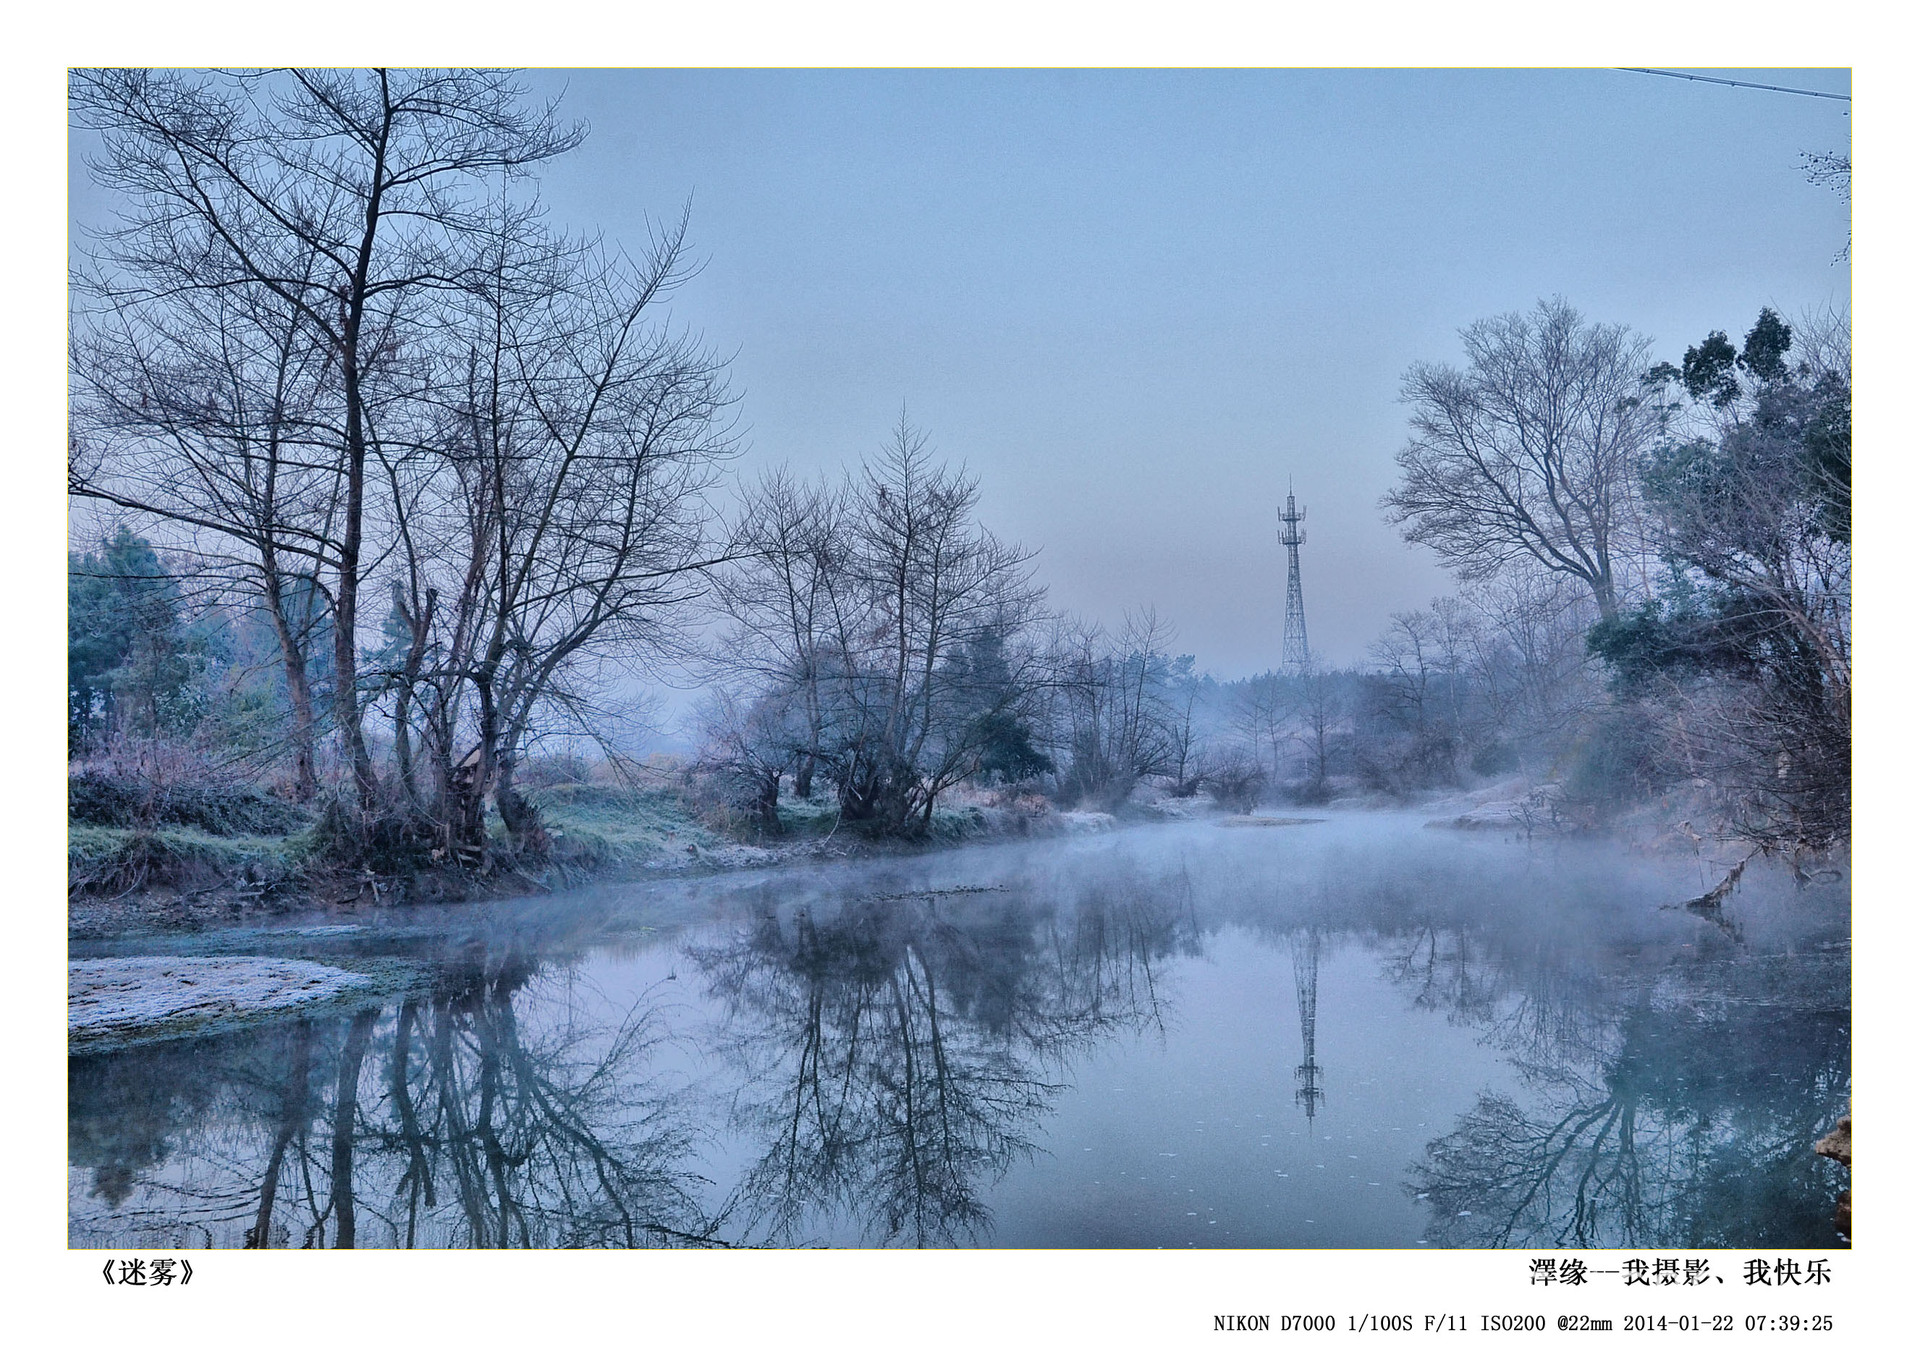 湖南家乡清晨的美景,用镜头记录那片回忆。